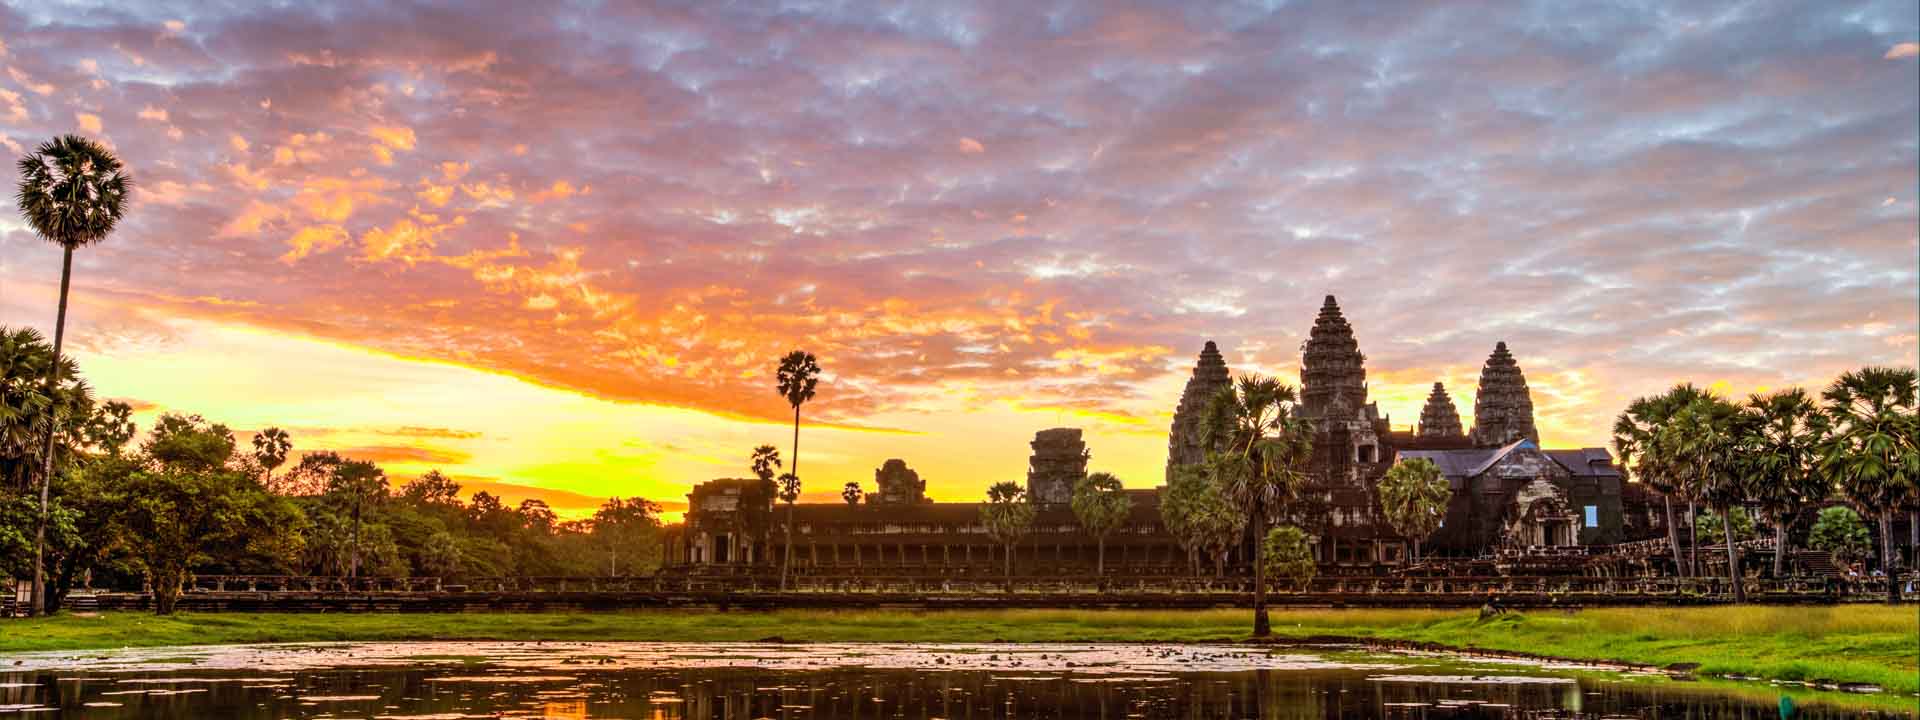 Lo mejor de Vietnam y los templos de Angkor 14 días